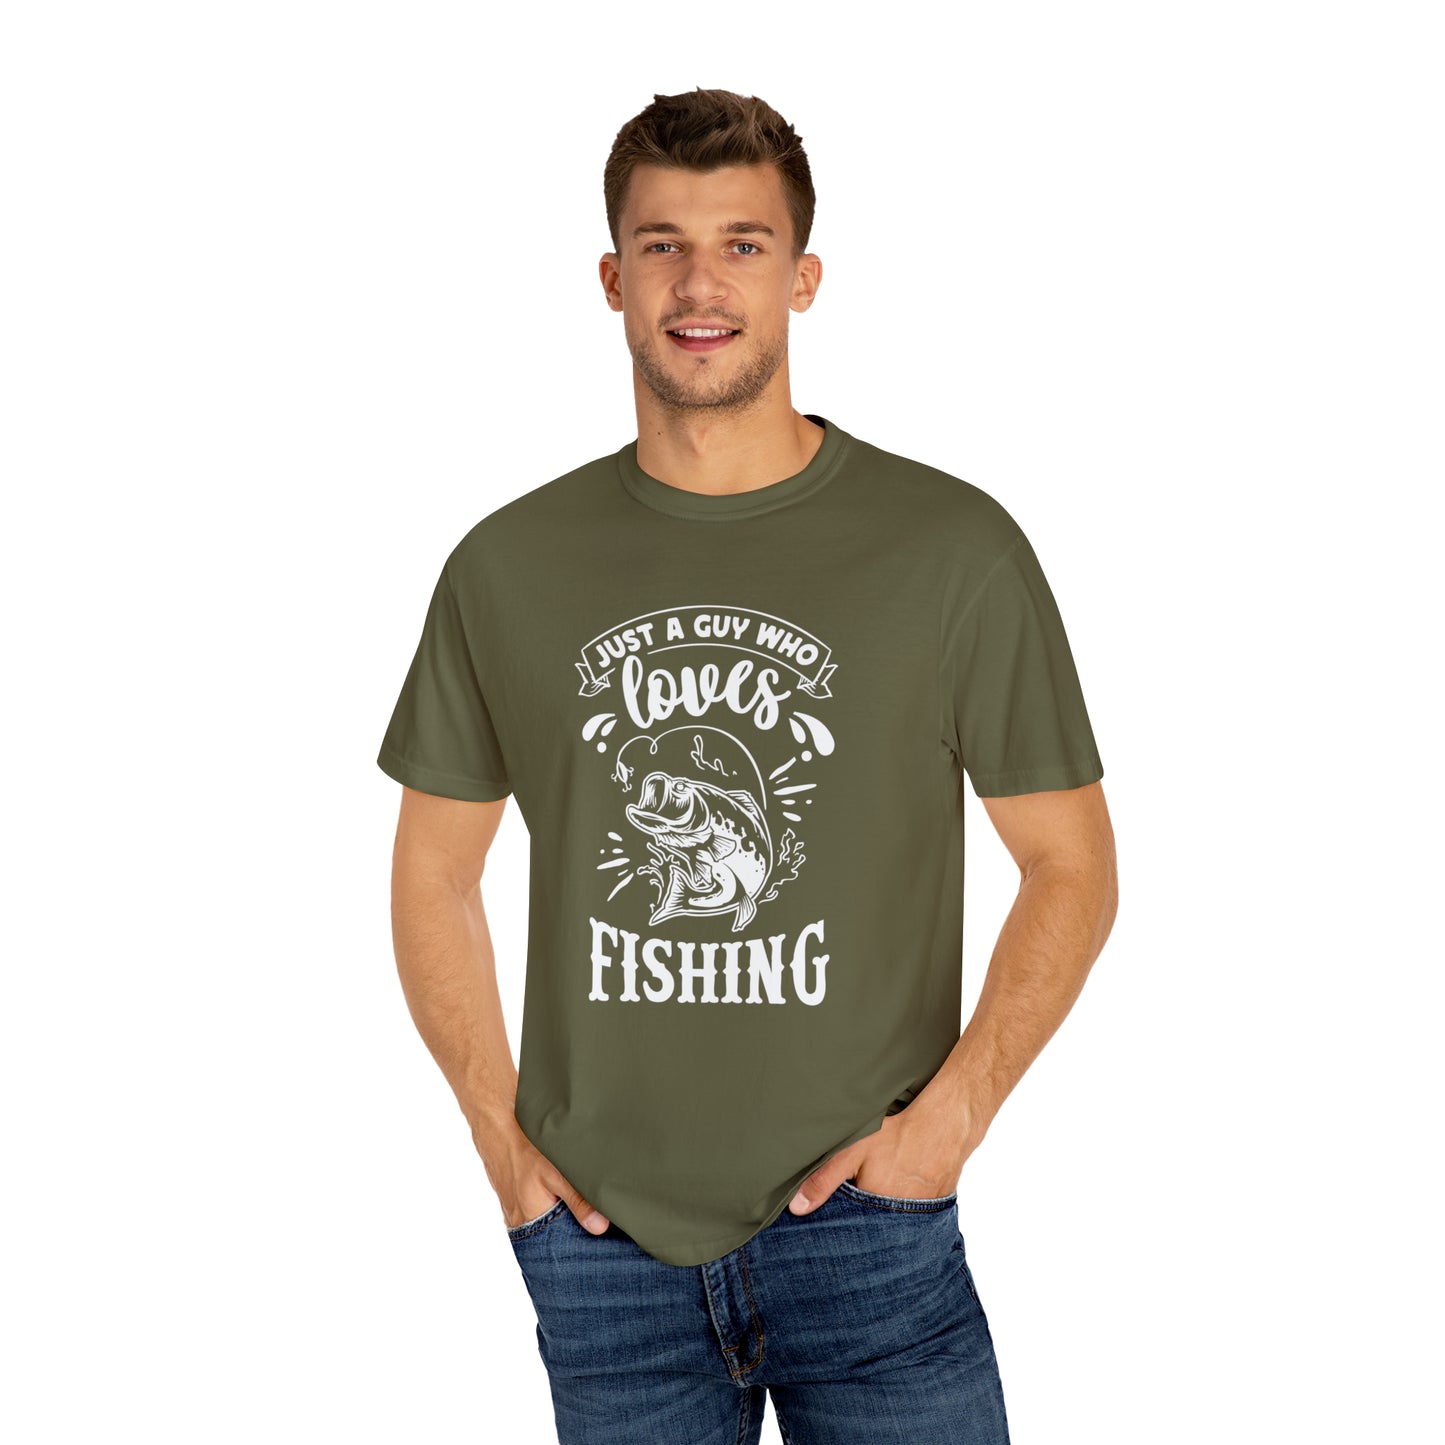 情熱的な釣り人: 釣りへの愛をスタイリッシュに表現 - T シャツ